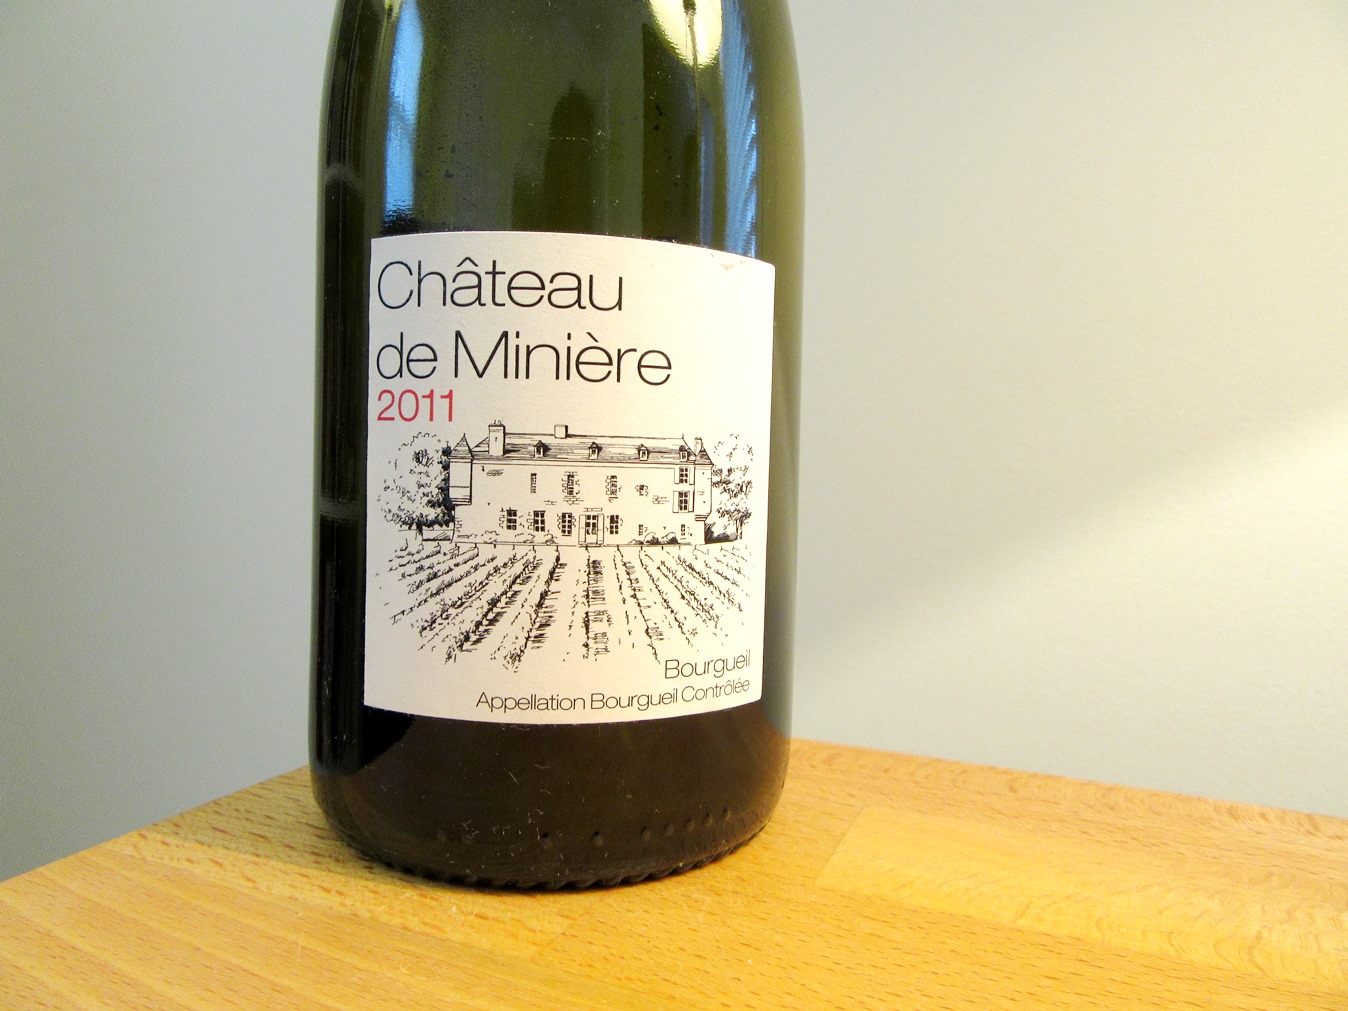 Chateau de Minière, Bourgueil 2011, Loire, France, Wine Casual